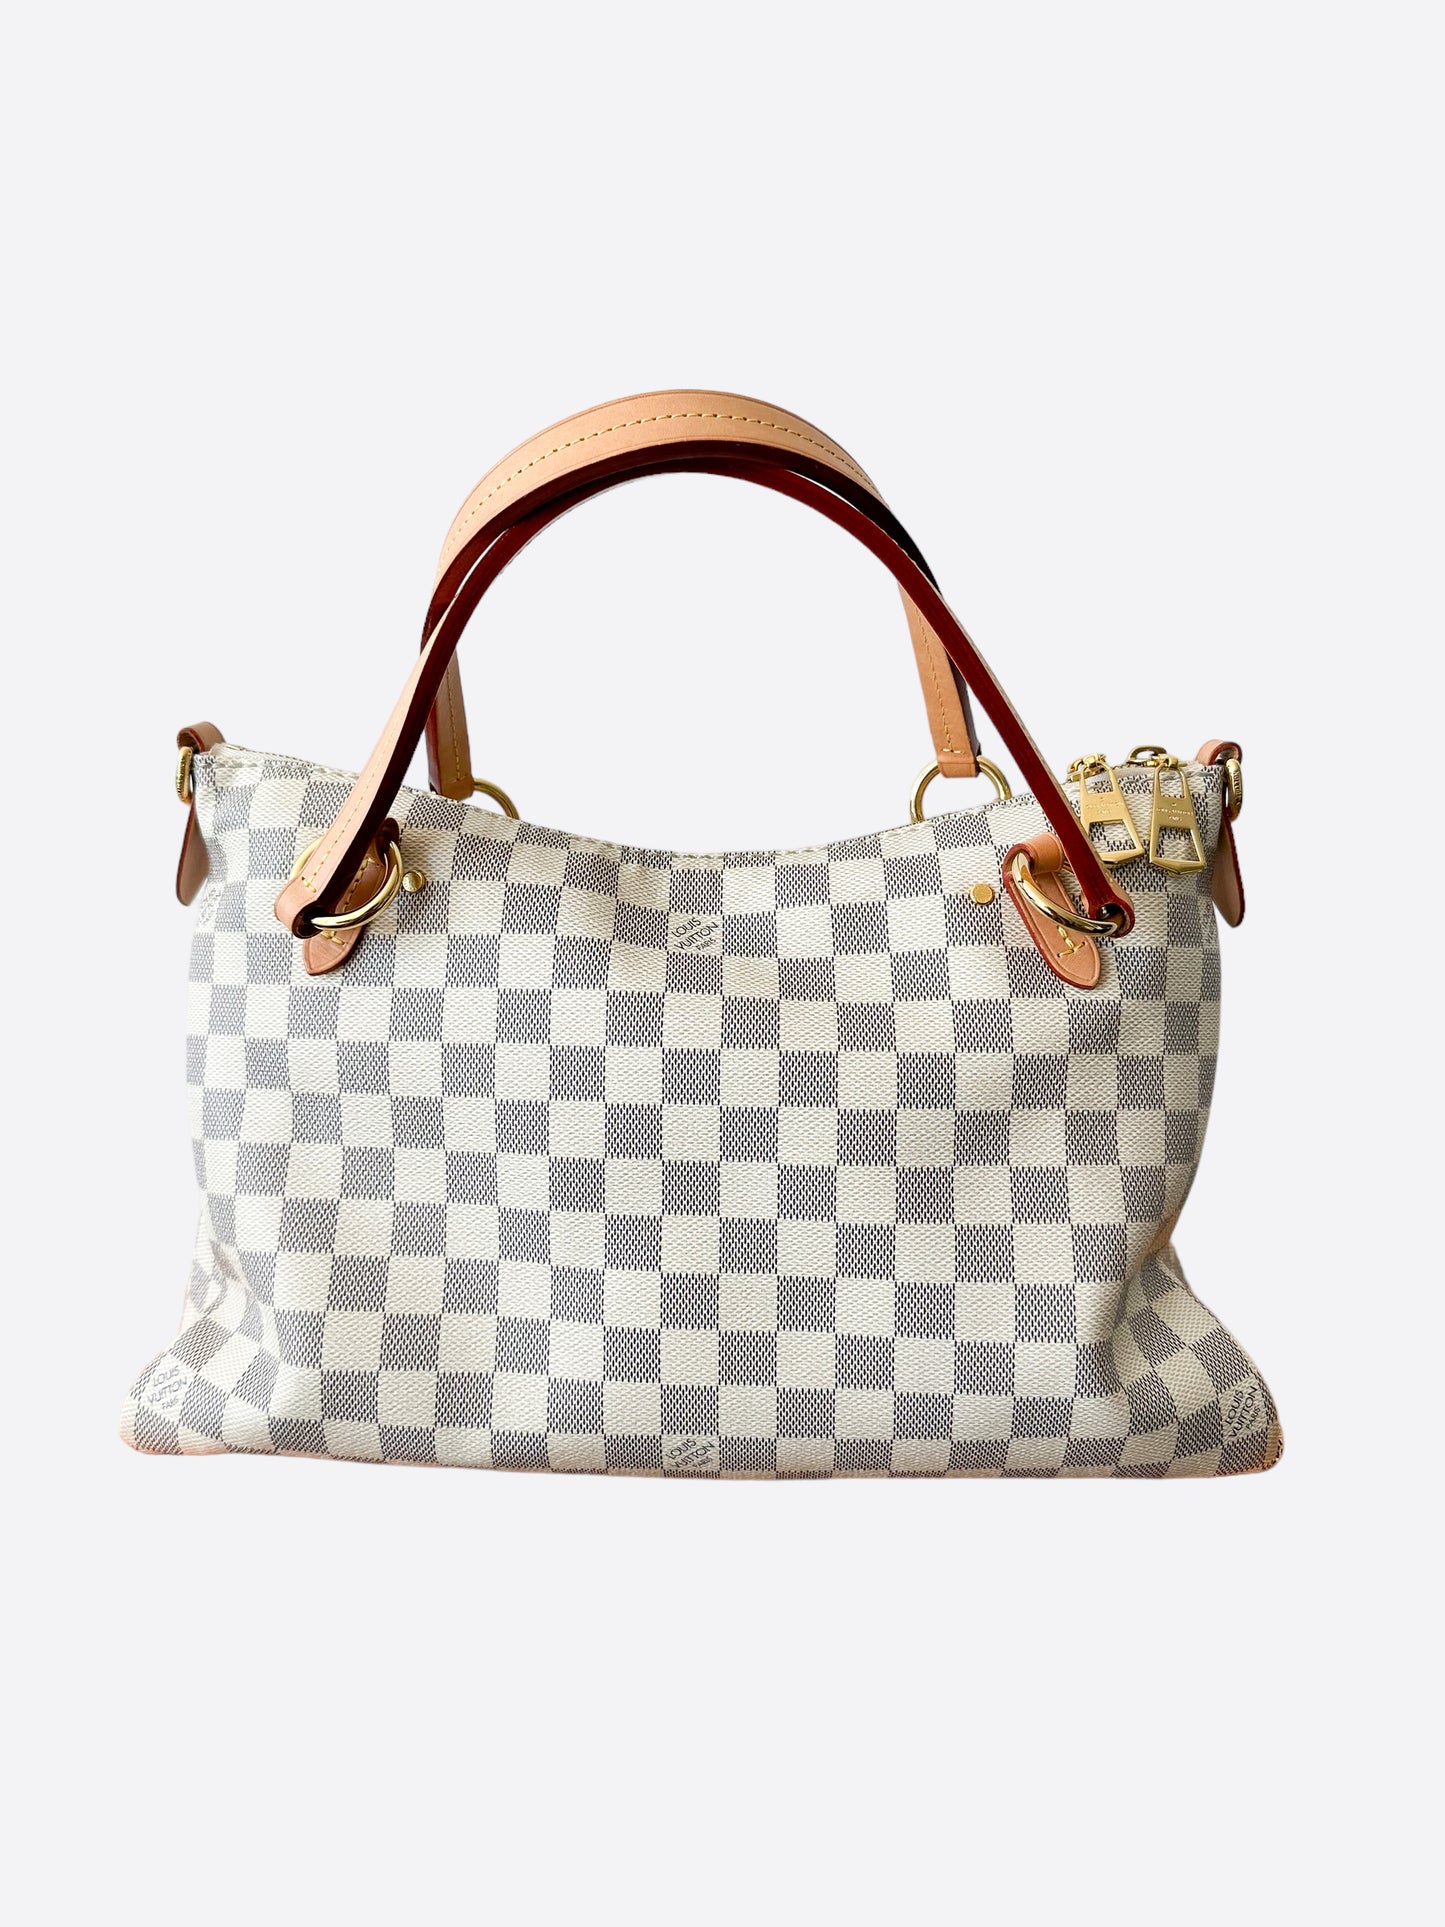 Louis Vuitton Damier Azur Canvas Lymington Bag